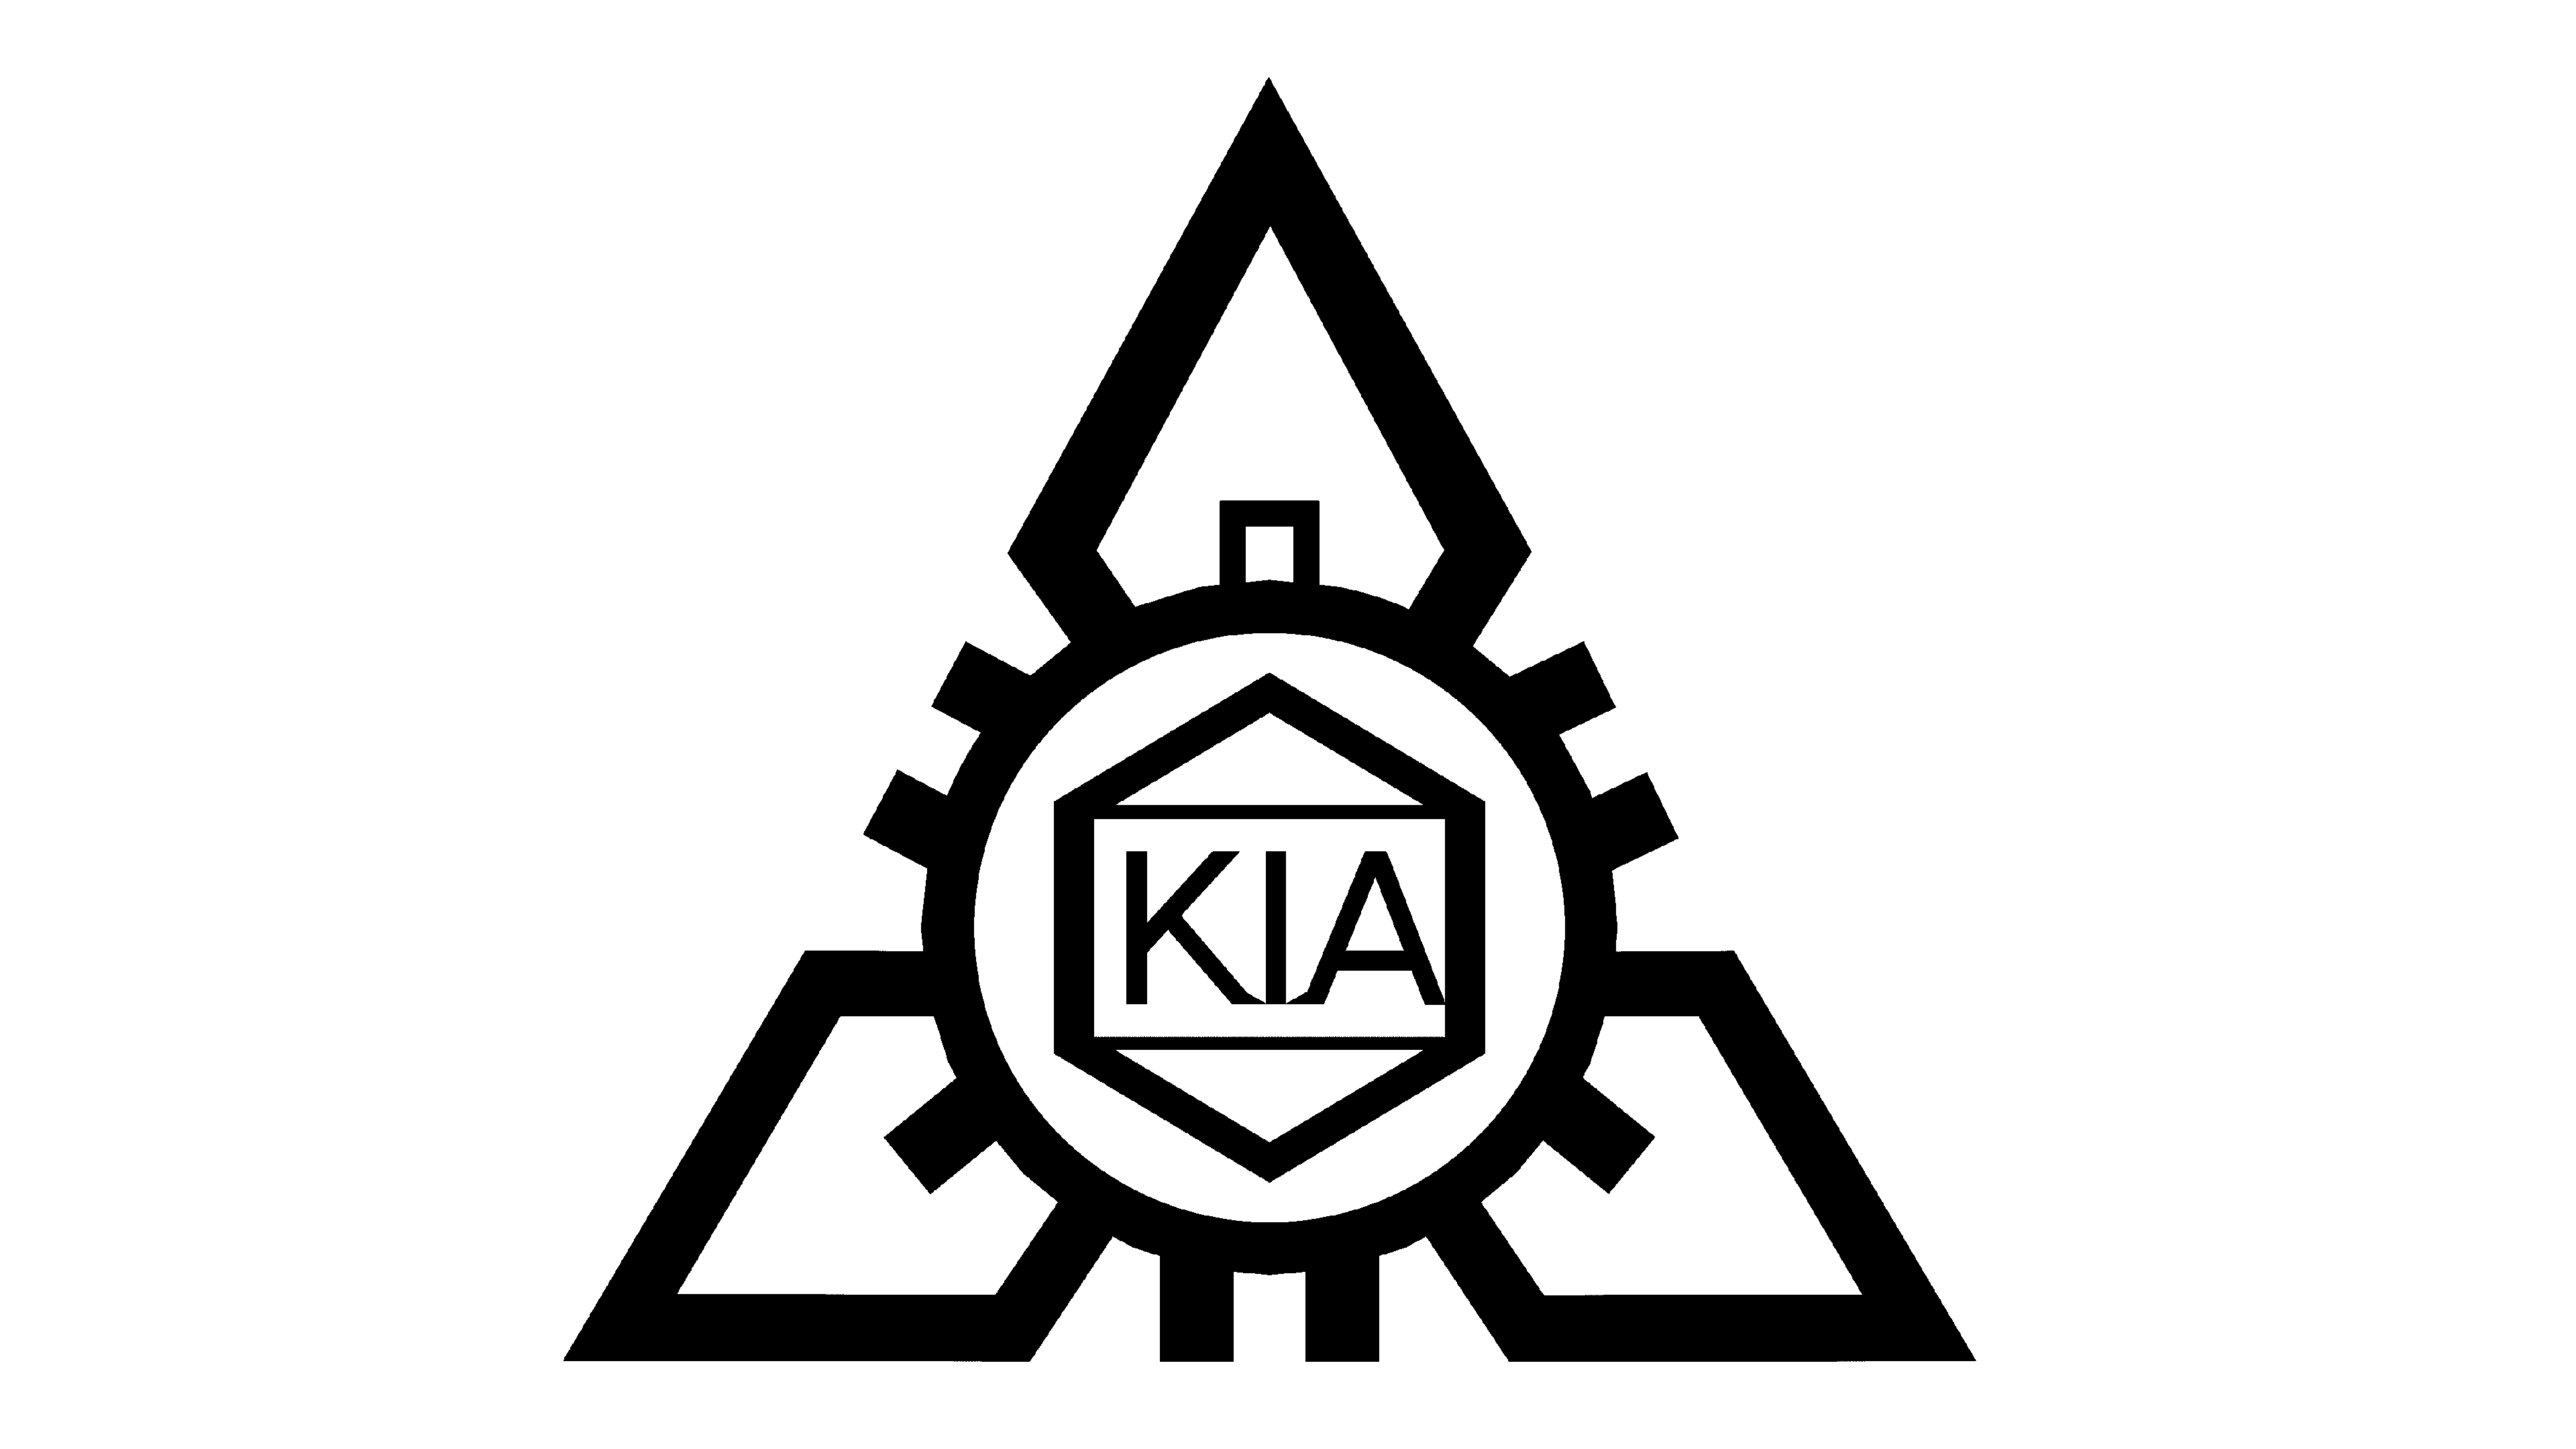 How To Draw A New KIA Logo in coreldraw||Drawing #shorts #kia #coreldraw  #famouscars - YouTube